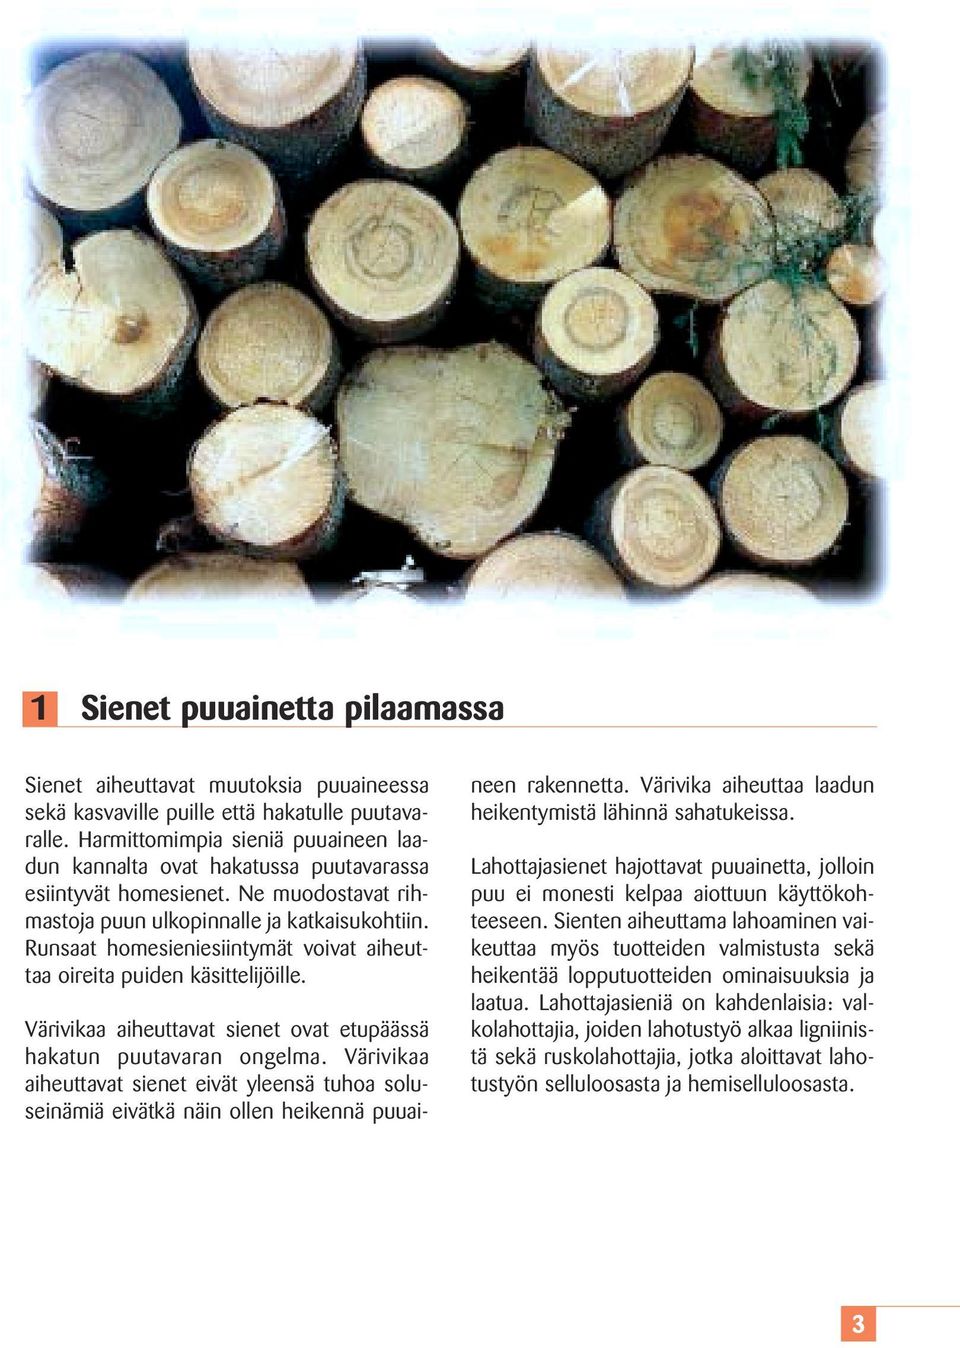 Runsaat homesieniesiintymät voivat aiheuttaa oireita puiden käsittelijöille. Värivikaa aiheuttavat sienet ovat etupäässä hakatun puutavaran ongelma.